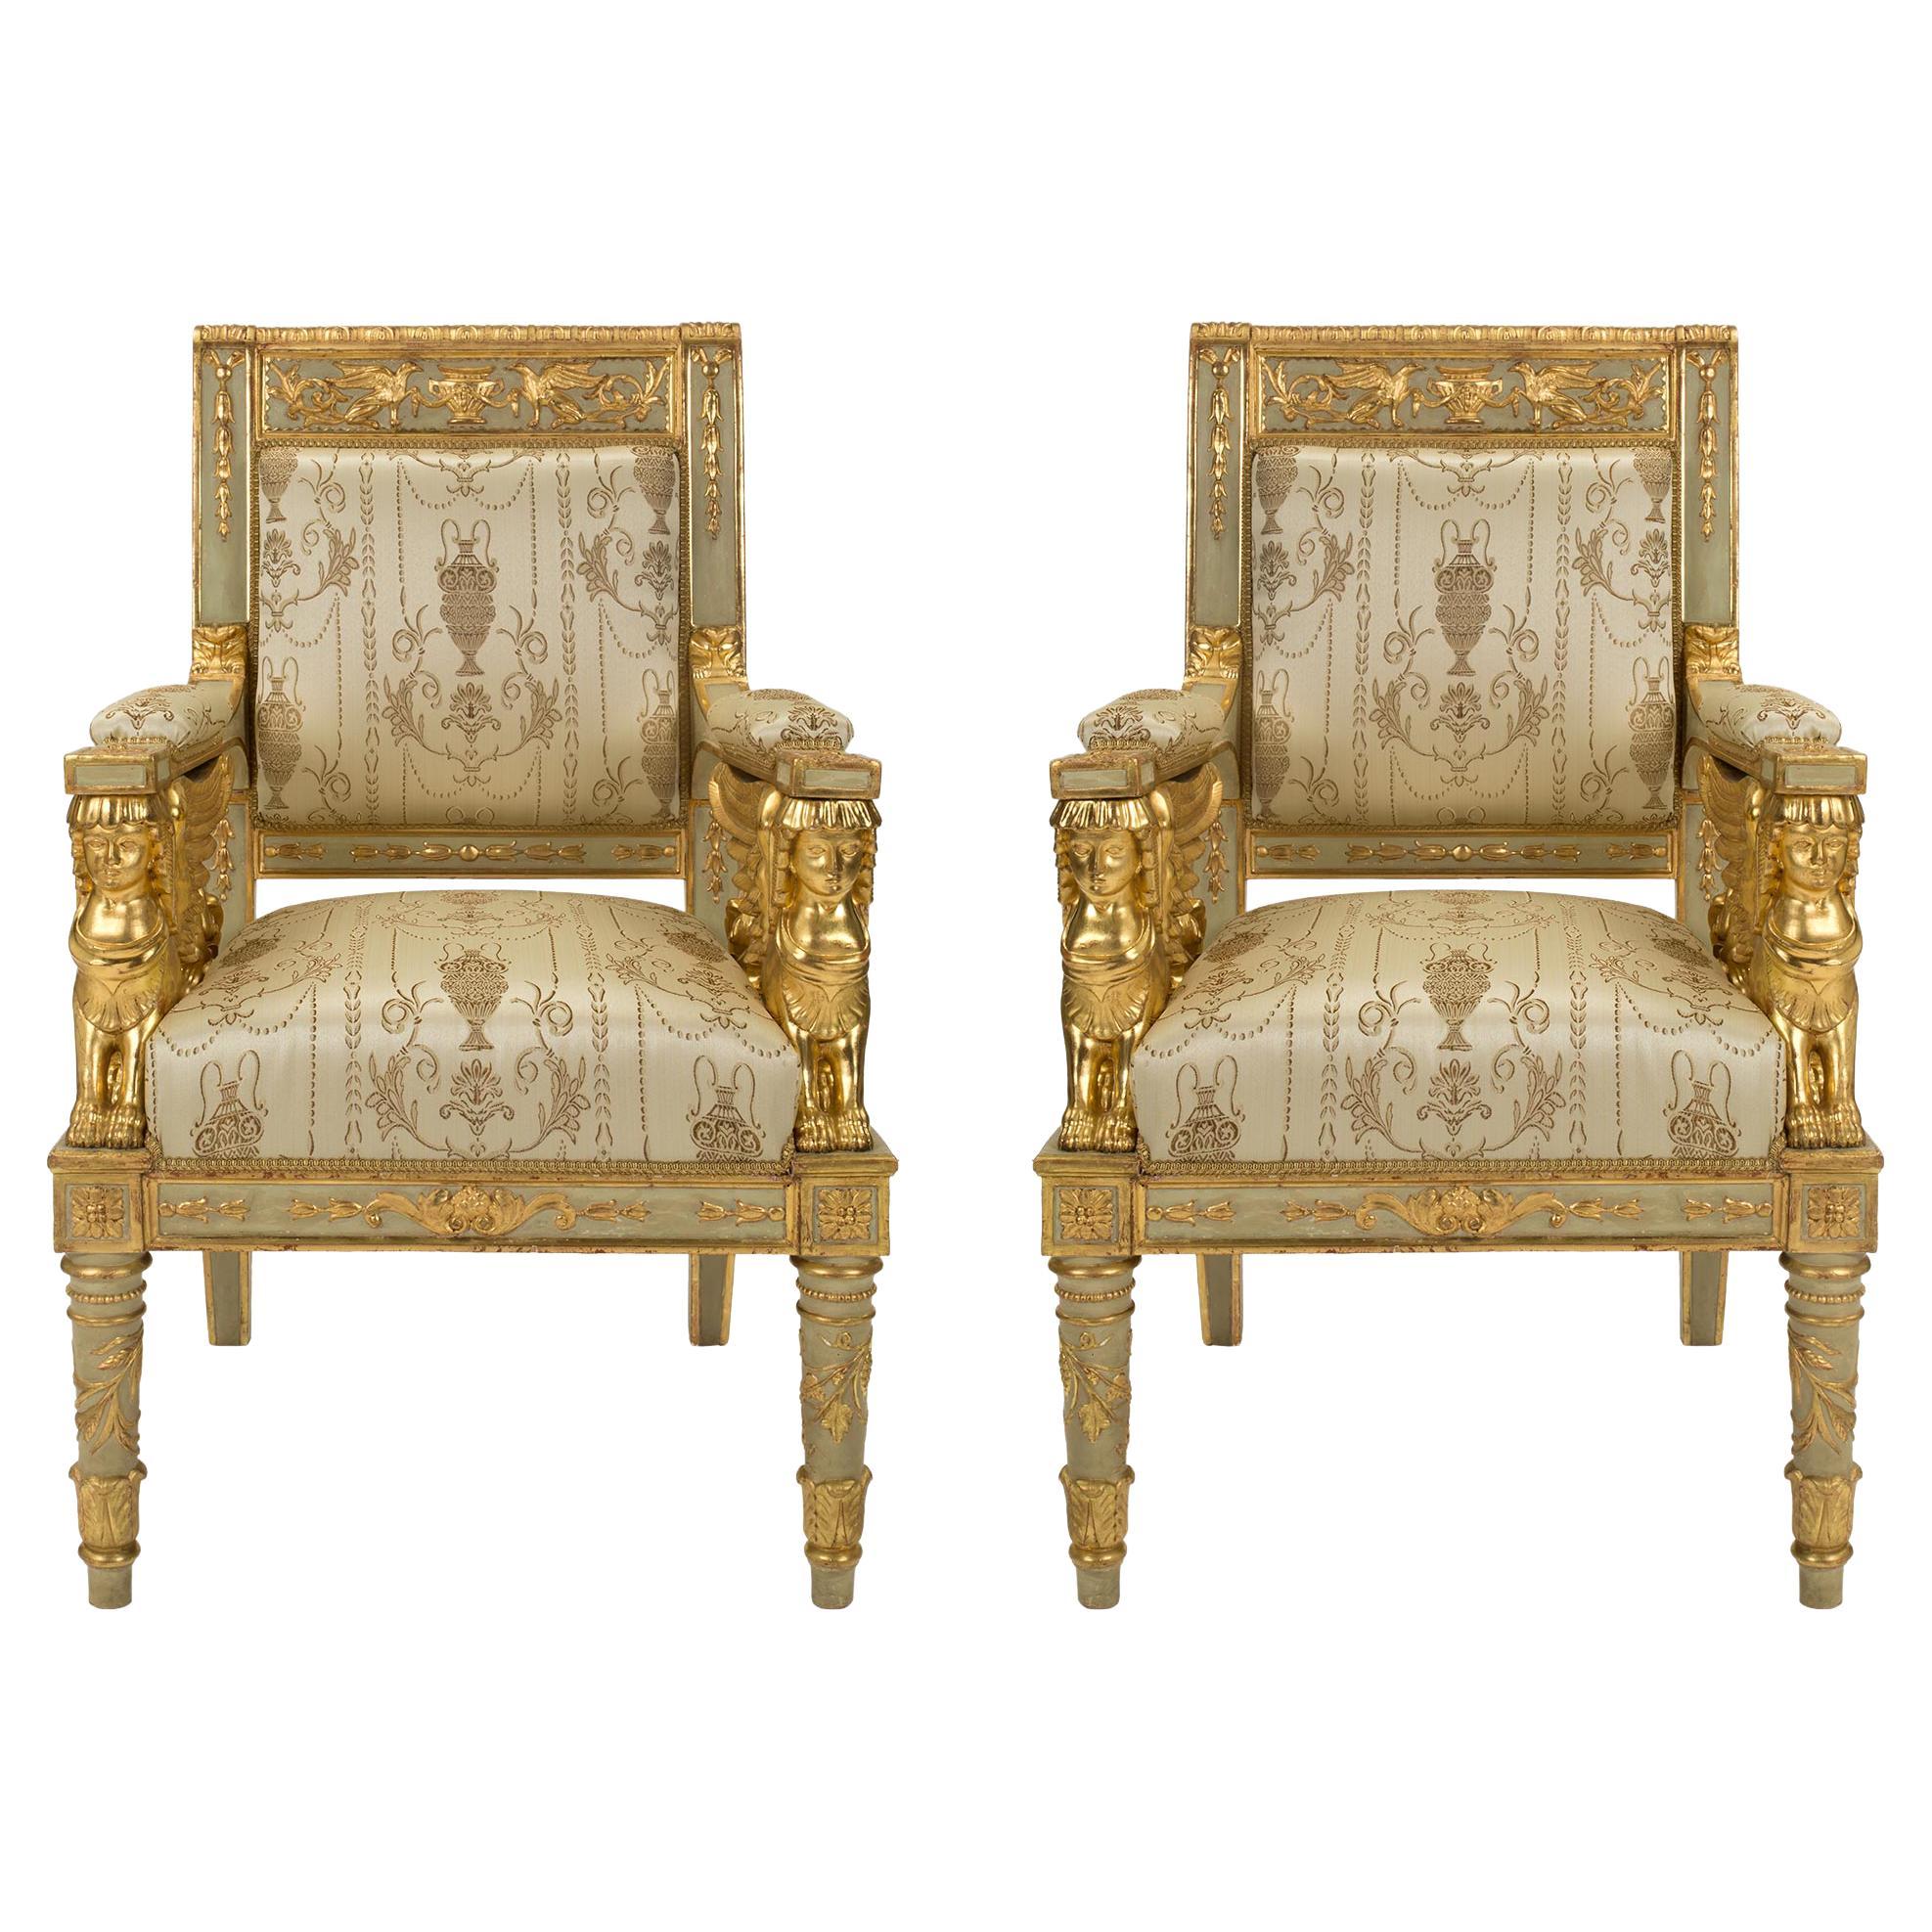 Paire de fauteuils italiens de style néo-classique du milieu du XIXe siècle